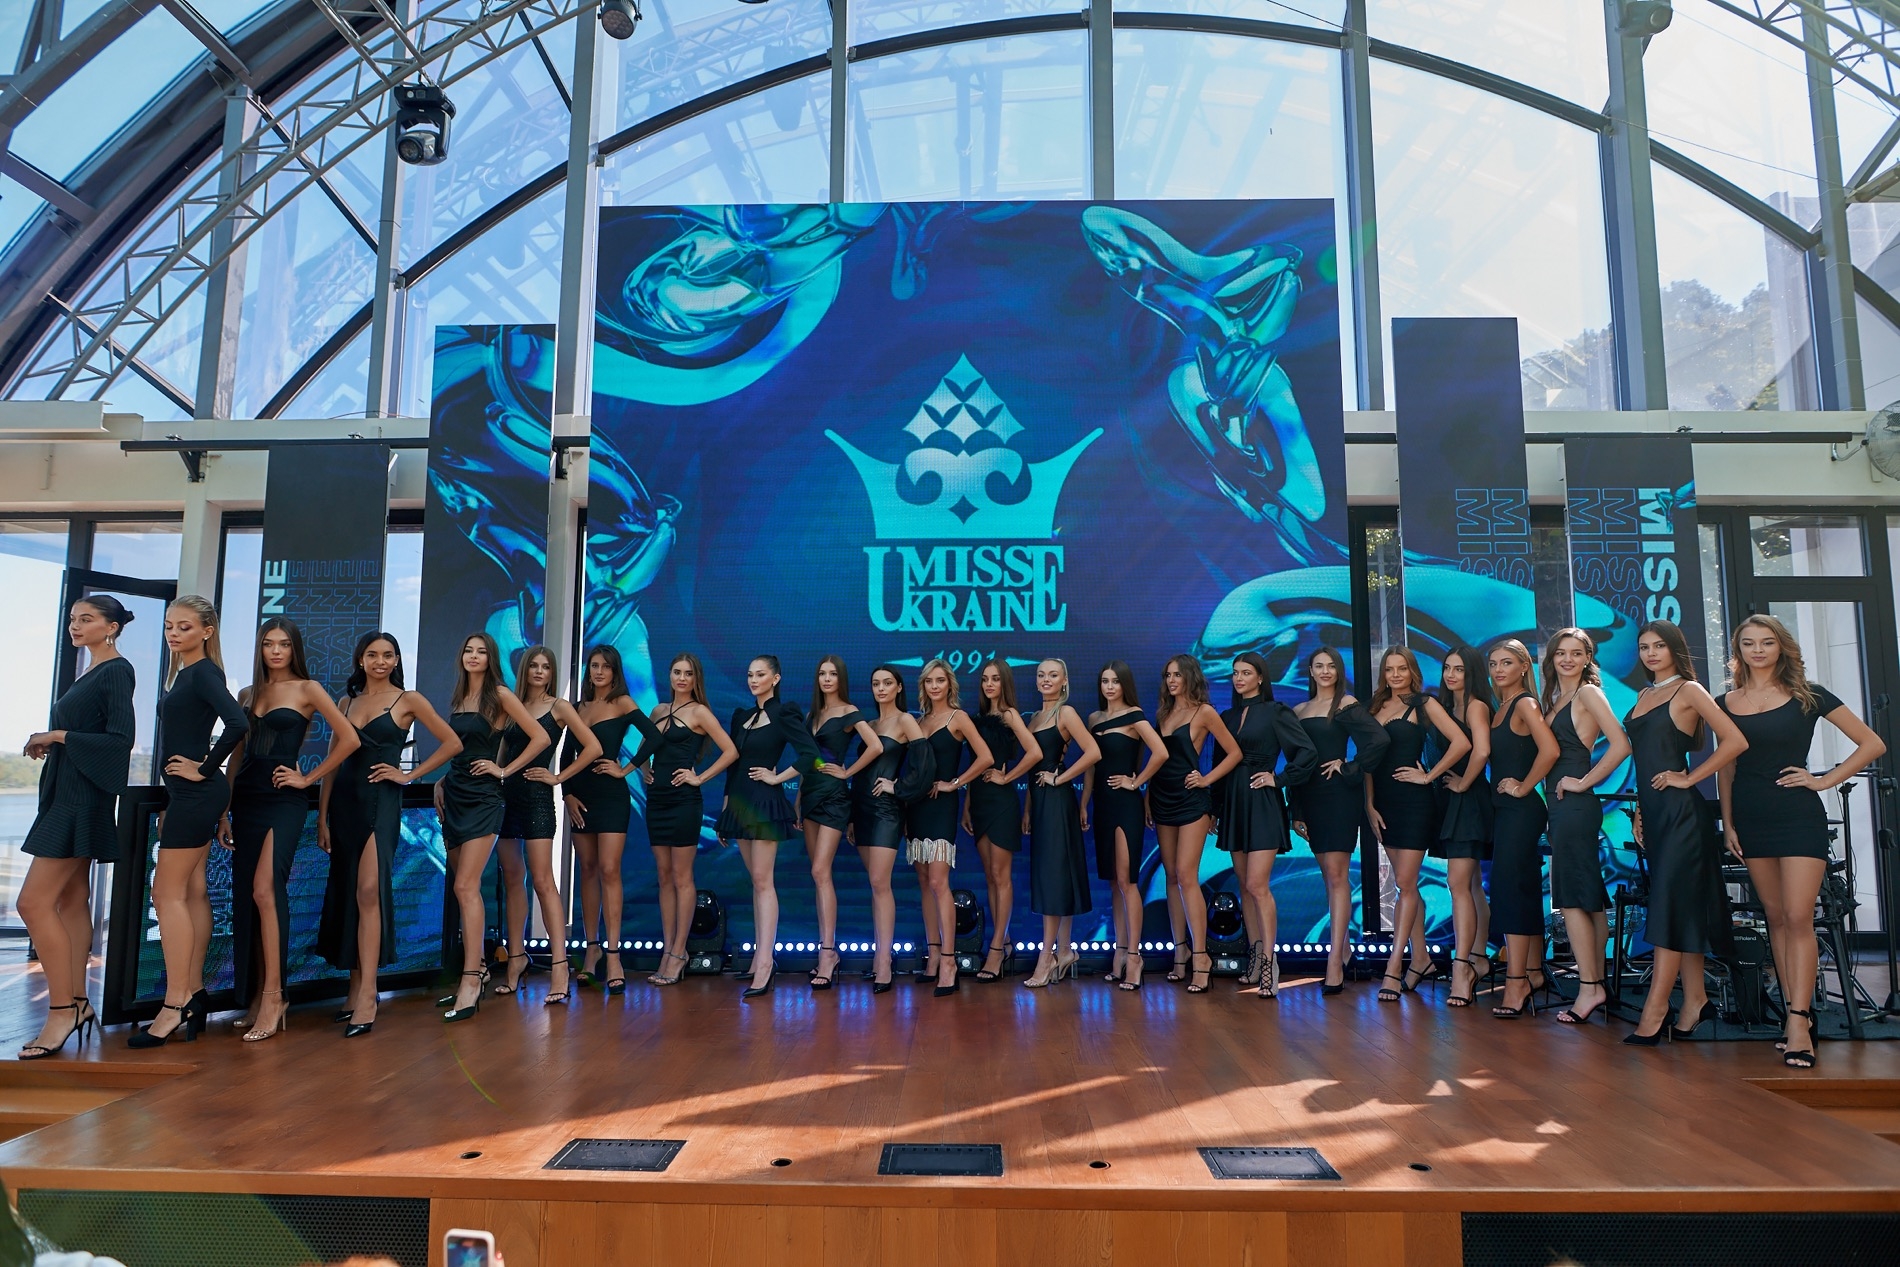 Корону получит только одна: организаторы "Мисс Украина" представили 25 финалисток конкурса (ФОТО) - фото №6